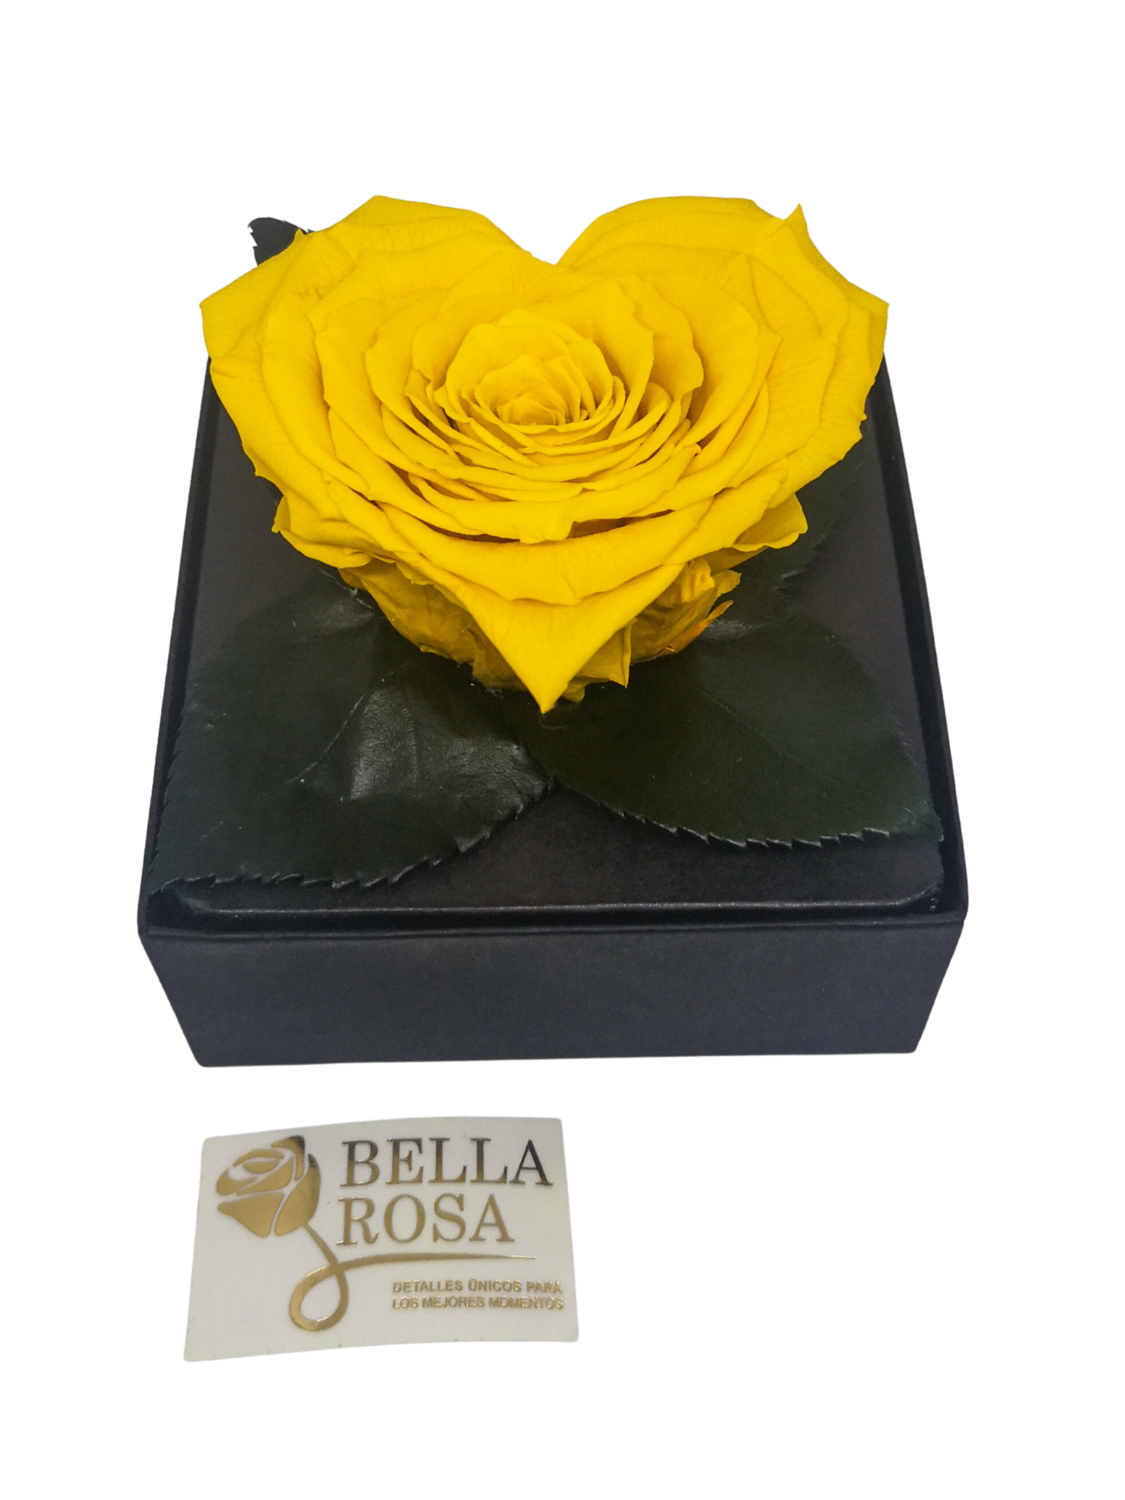 Rosa Preservada Amarilla en Forma de Corazón Caja Acrílica